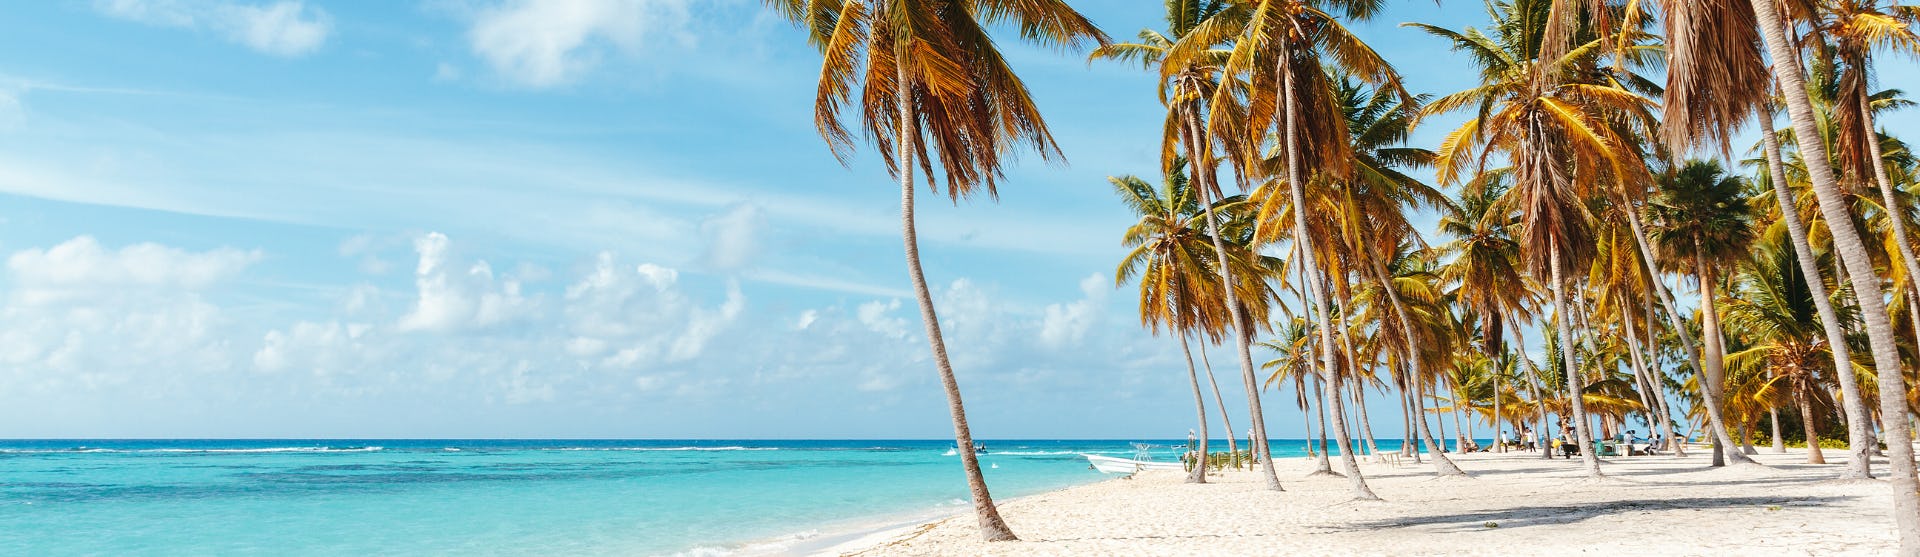 Bild på n strand med palmer. Upplev Karibiens fantastiska stränder.